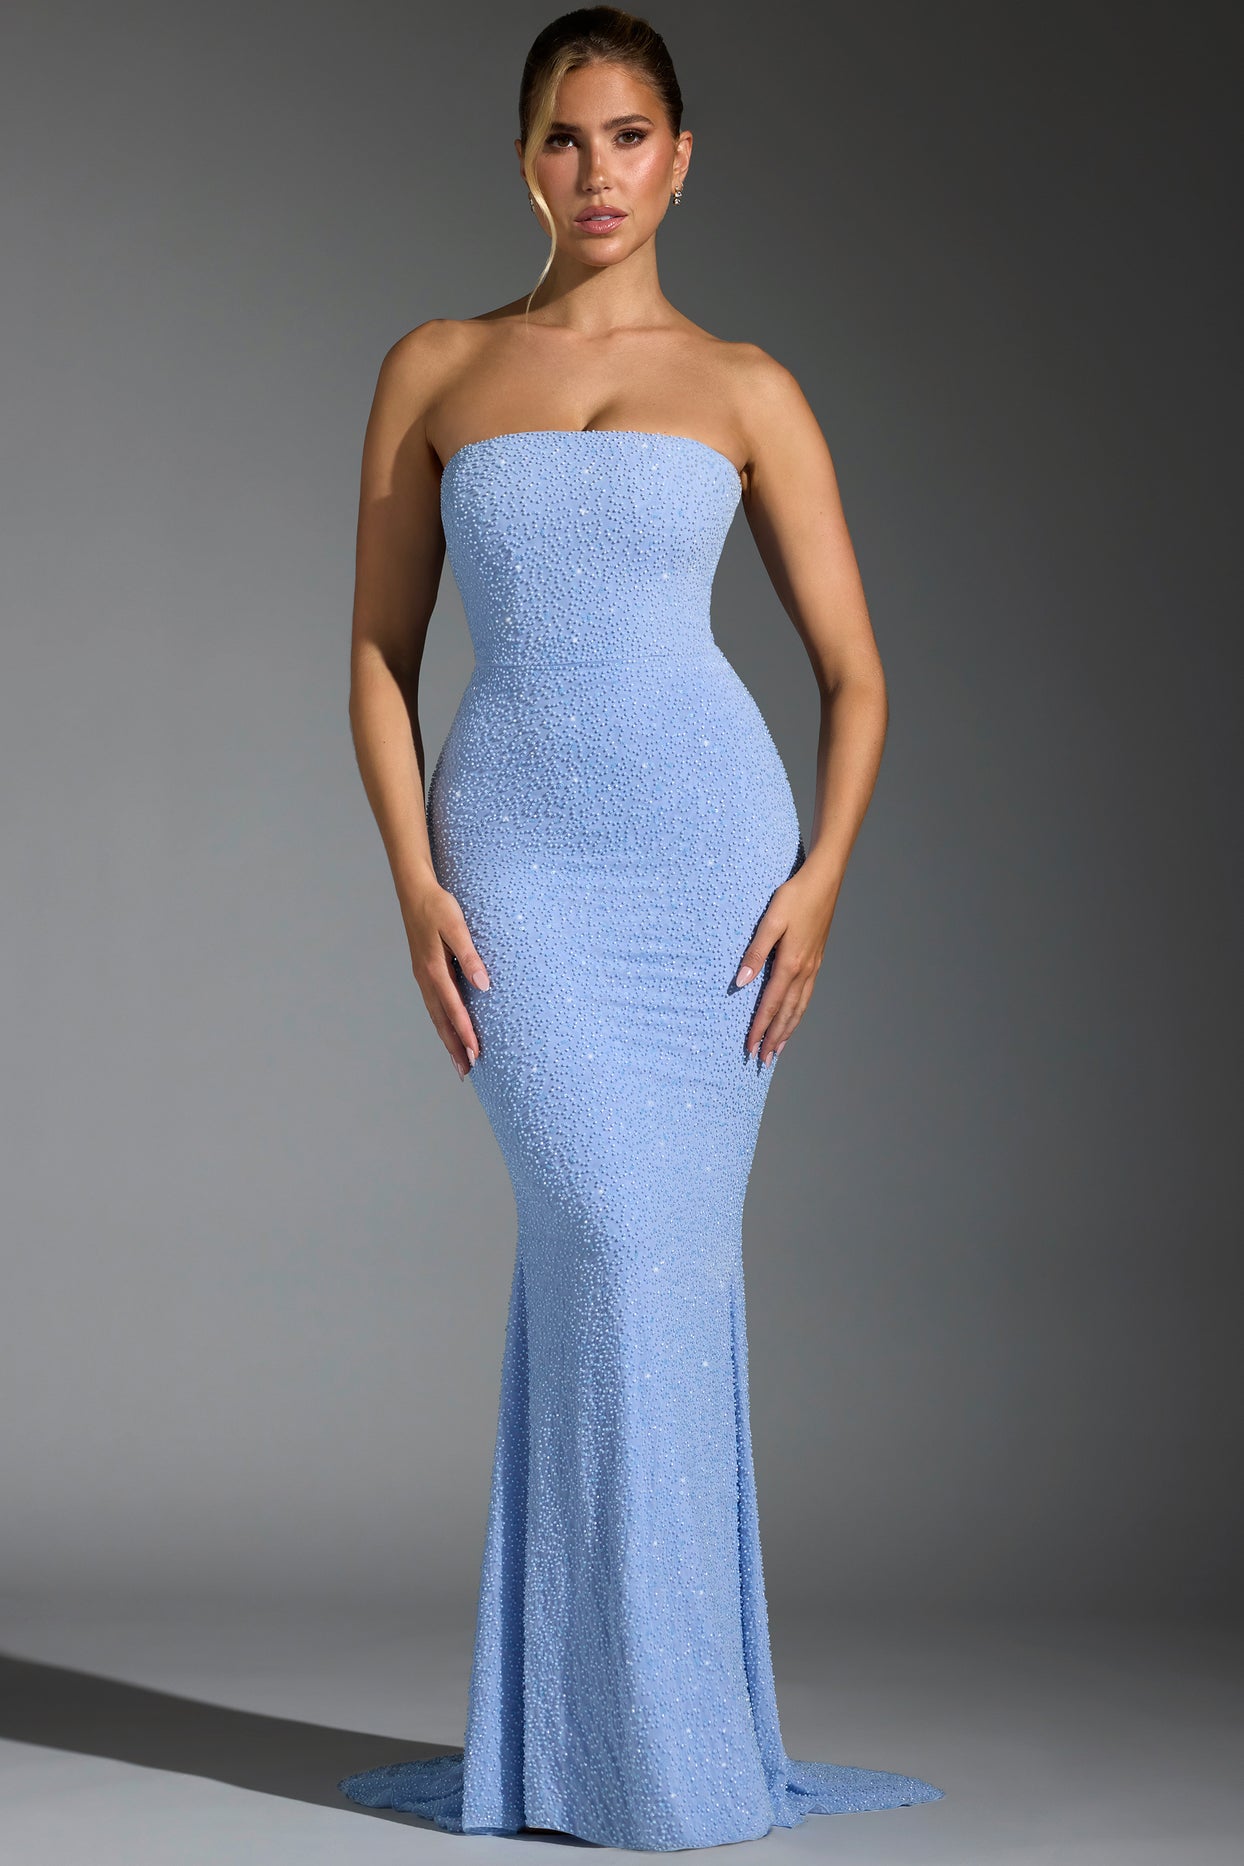 Ozdobiona suknia z gorsetem w kolorze niebieskim